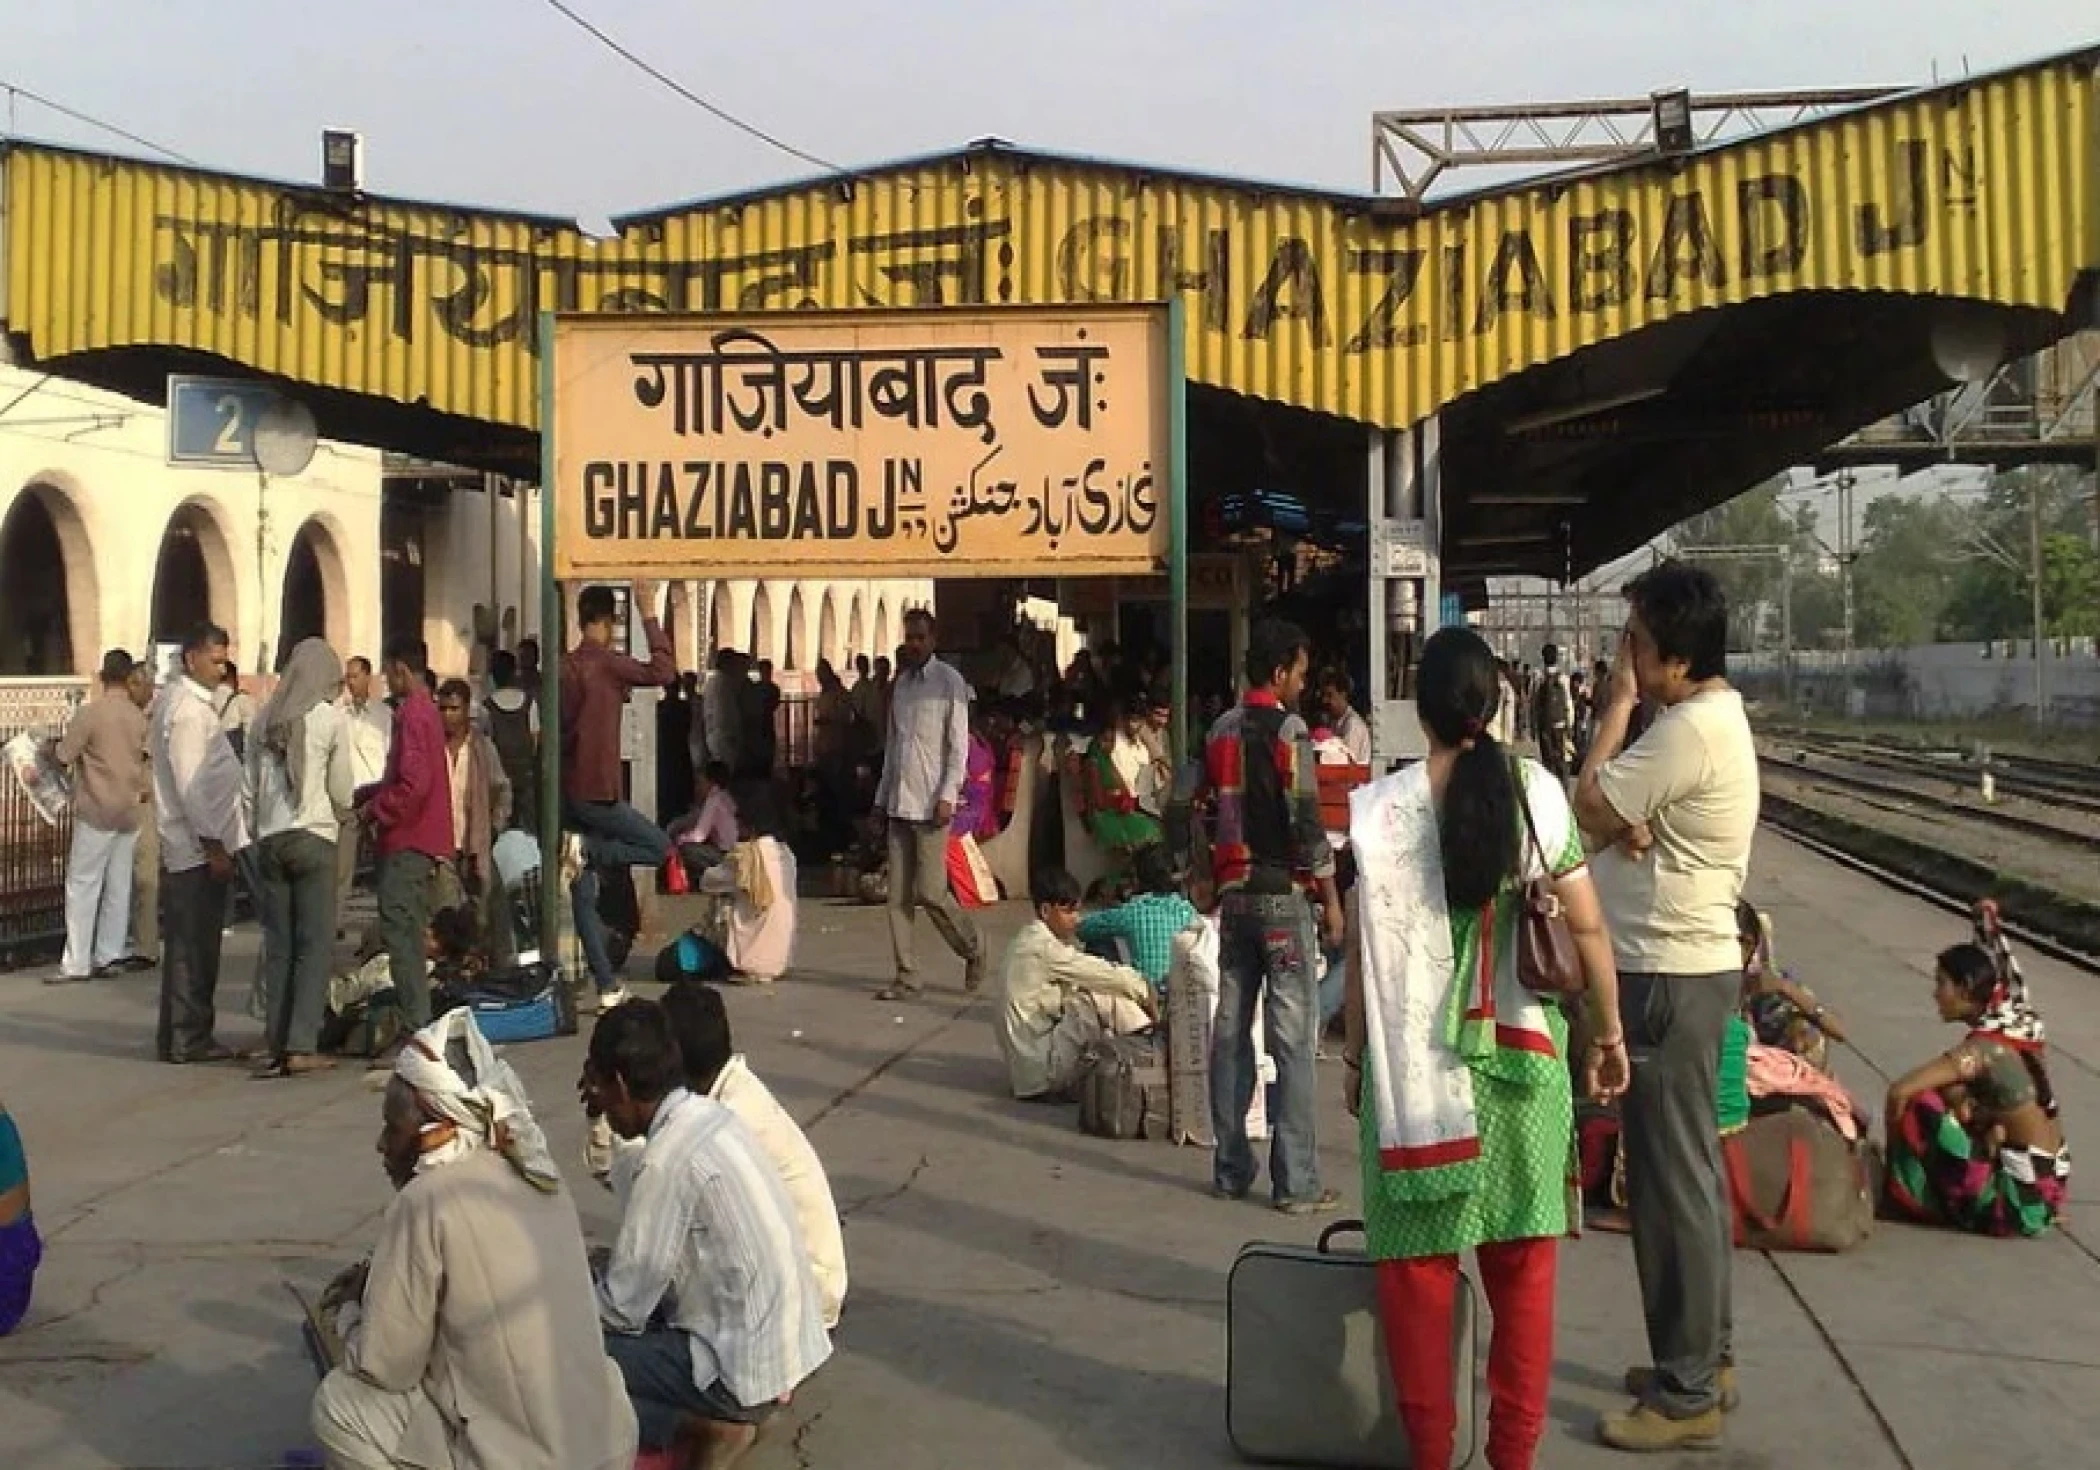 Ghaziabad to be Renamed? Yogi Aditya Nath Government considers name change